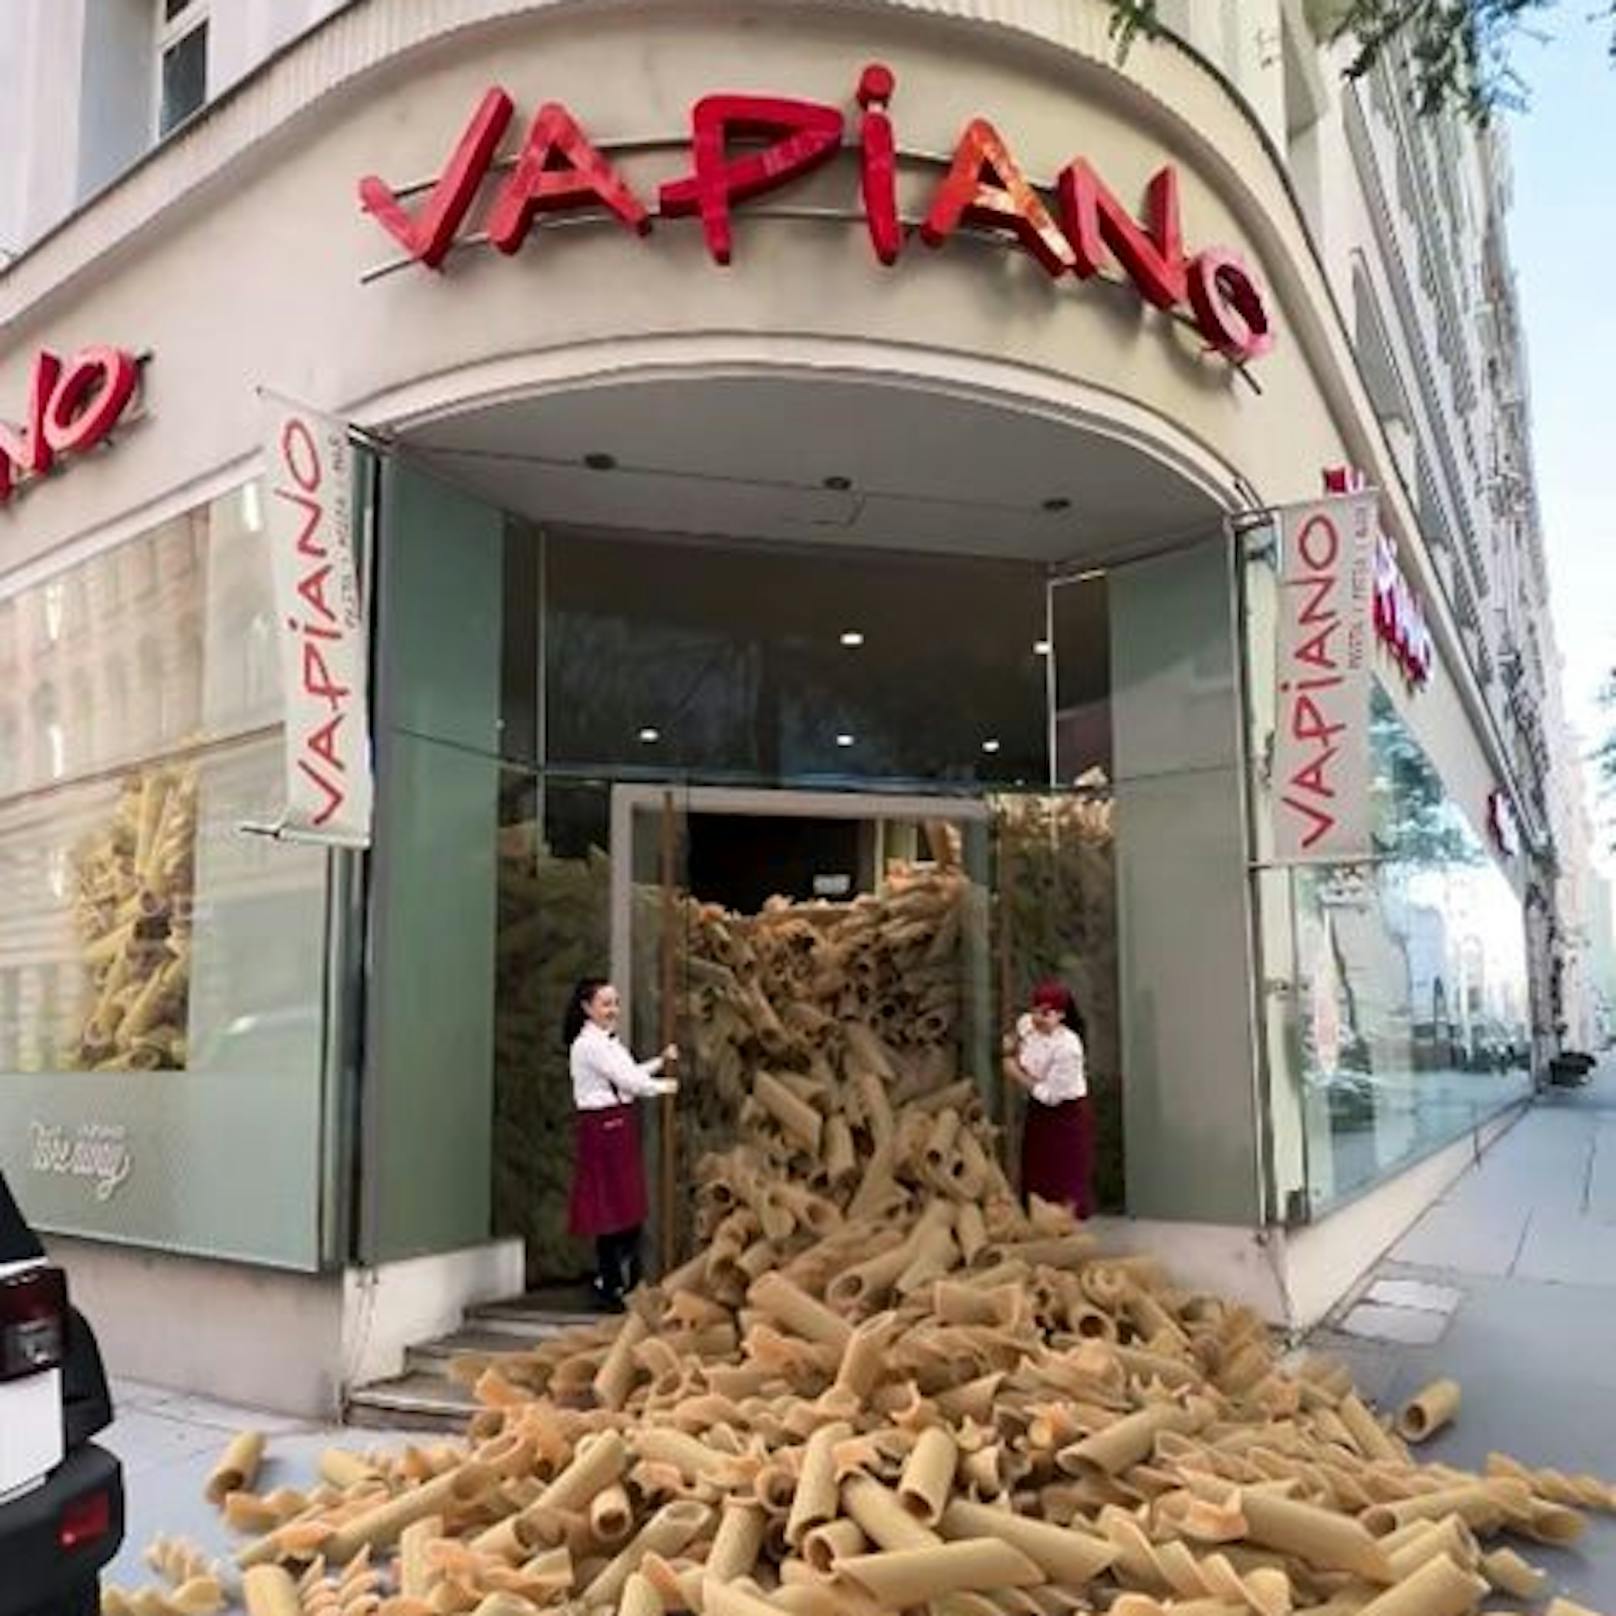 Täuschend echt sieht sie aus, die Pasta, die gerade an der Hausfassade im Vapiano in der Mariahilfer Straße getrocknet wird und aus den Türen des Restaurants lawinenartig heraussprudelt.